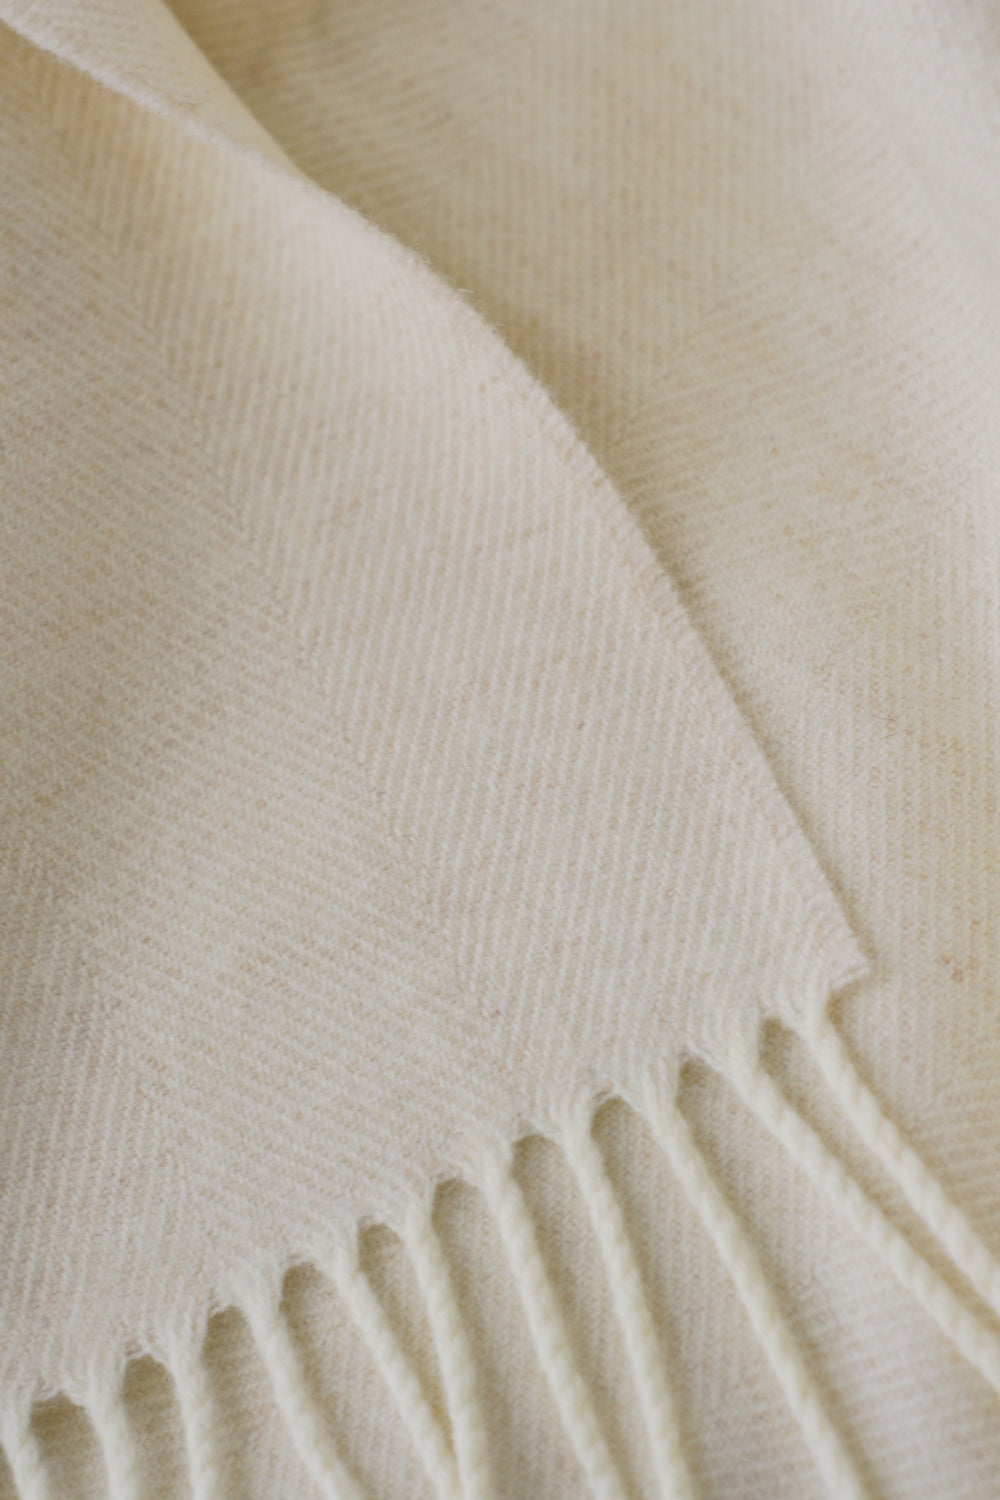 Closeup of cream merino herringbone wool throw by The British Blanket Company.